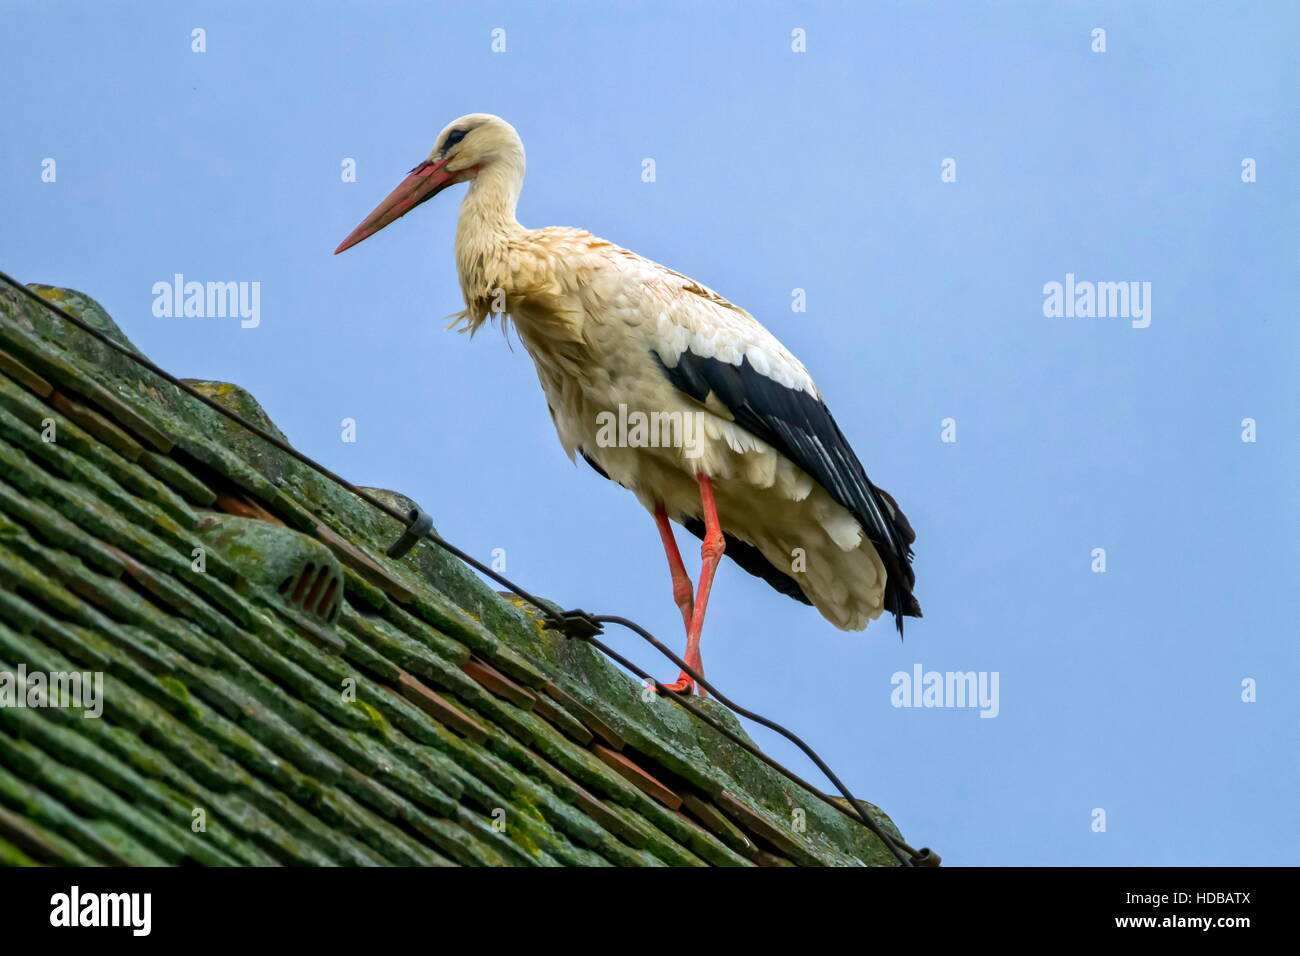 Unione cicogna bianca, ciconia, in piedi su un tetto Foto Stock